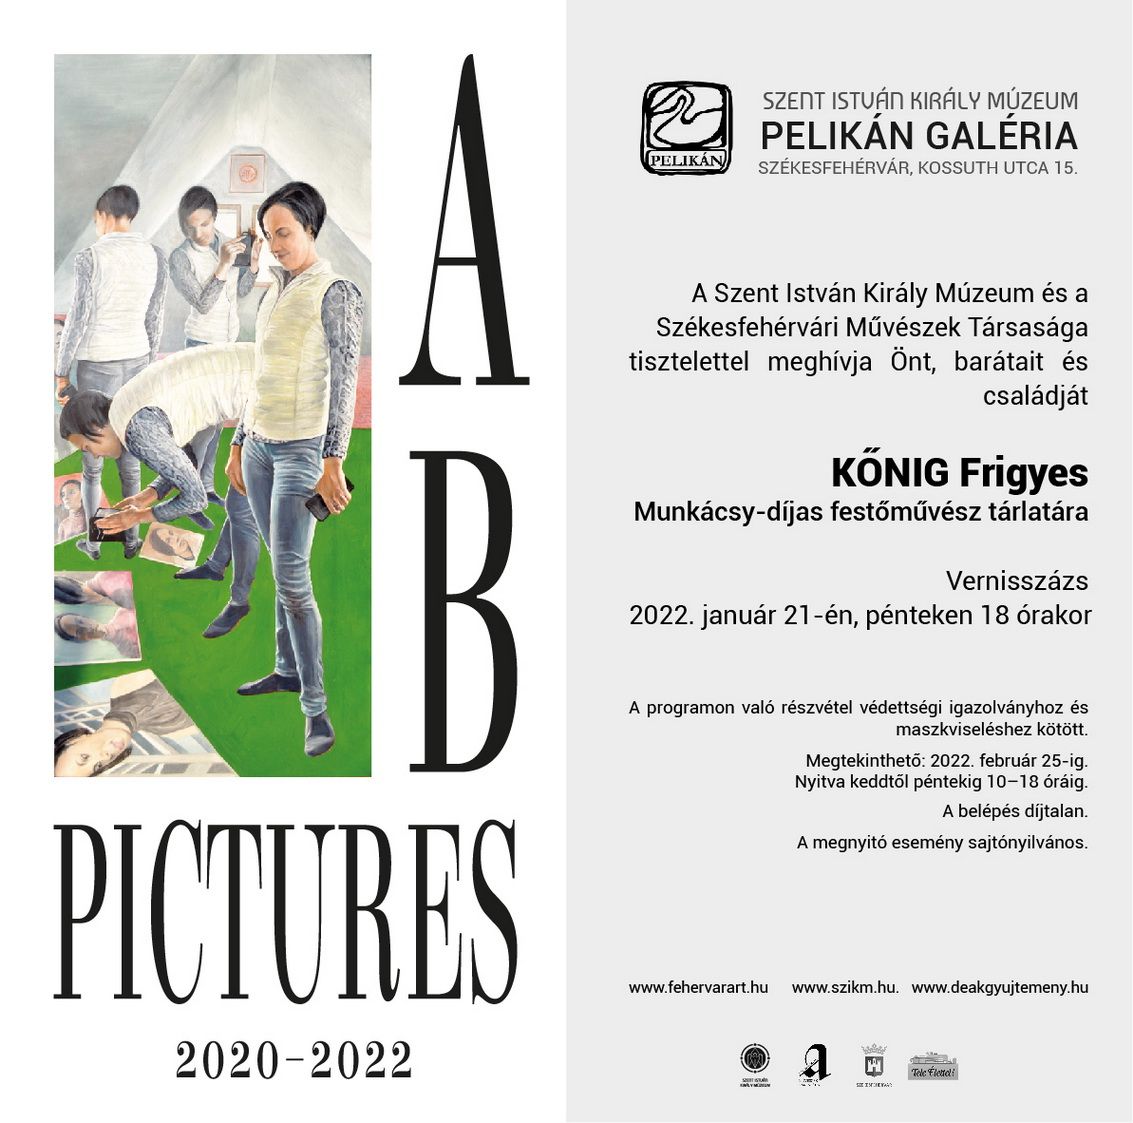 B Pictures 2020–2022 - Kőnig Frigyes tárlata nyílik meg a Pelikán Galériában